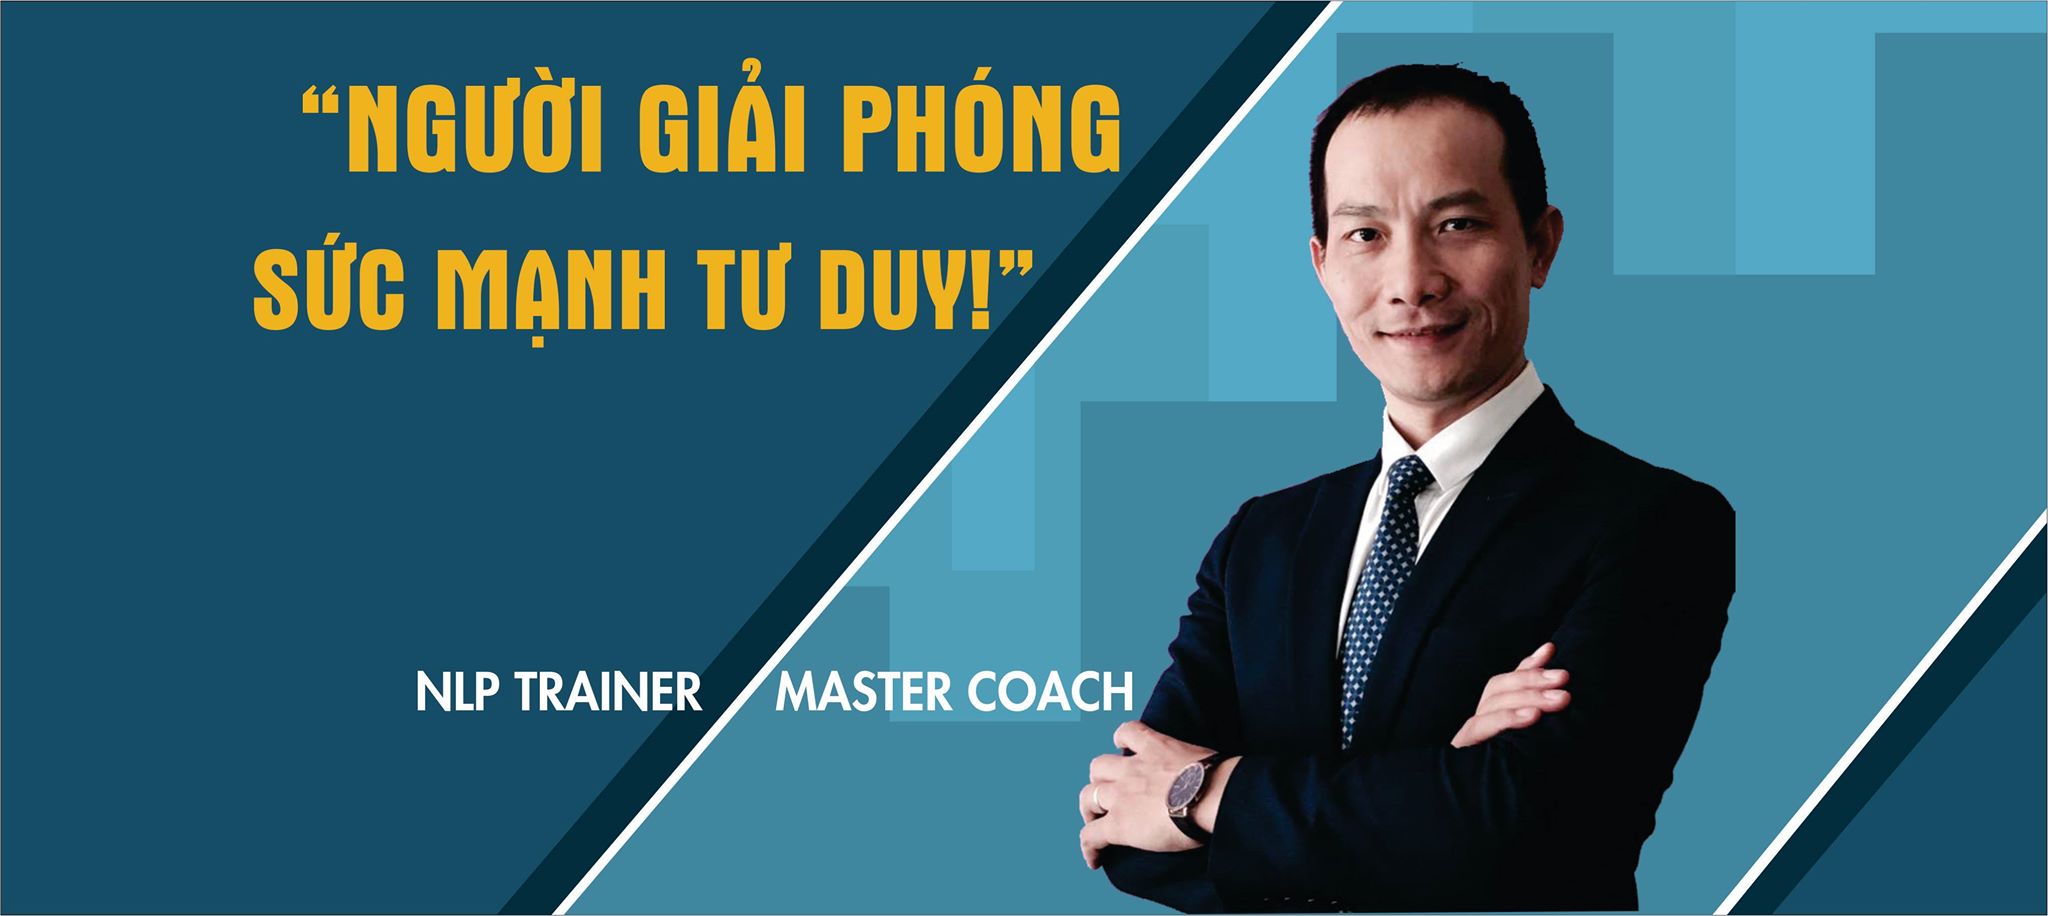 Master Trainer/Master Coach Nguyễn Xuân Hương - CÔNG TY TNHH MTV VIỆT NAM NLP COACHING